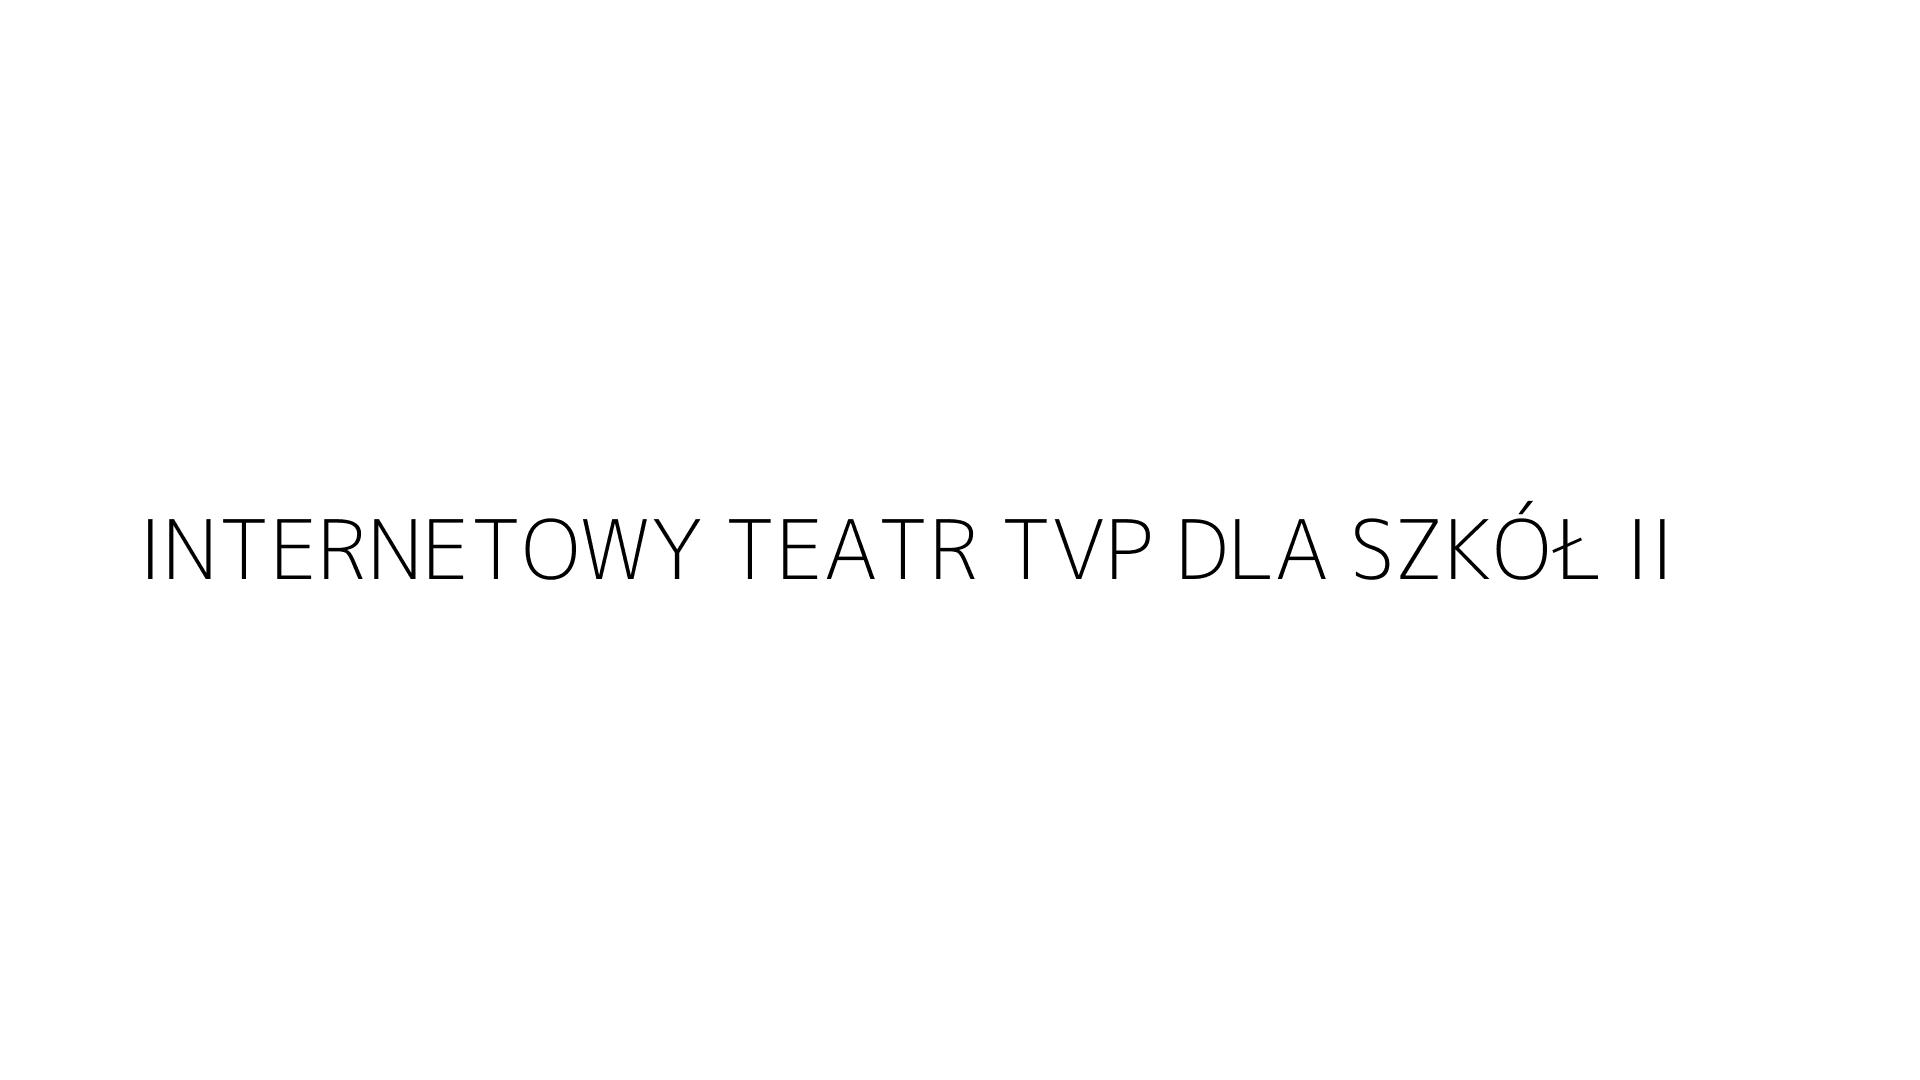 INTERNETOWY TEATR TVP DLA SZKÓŁ II